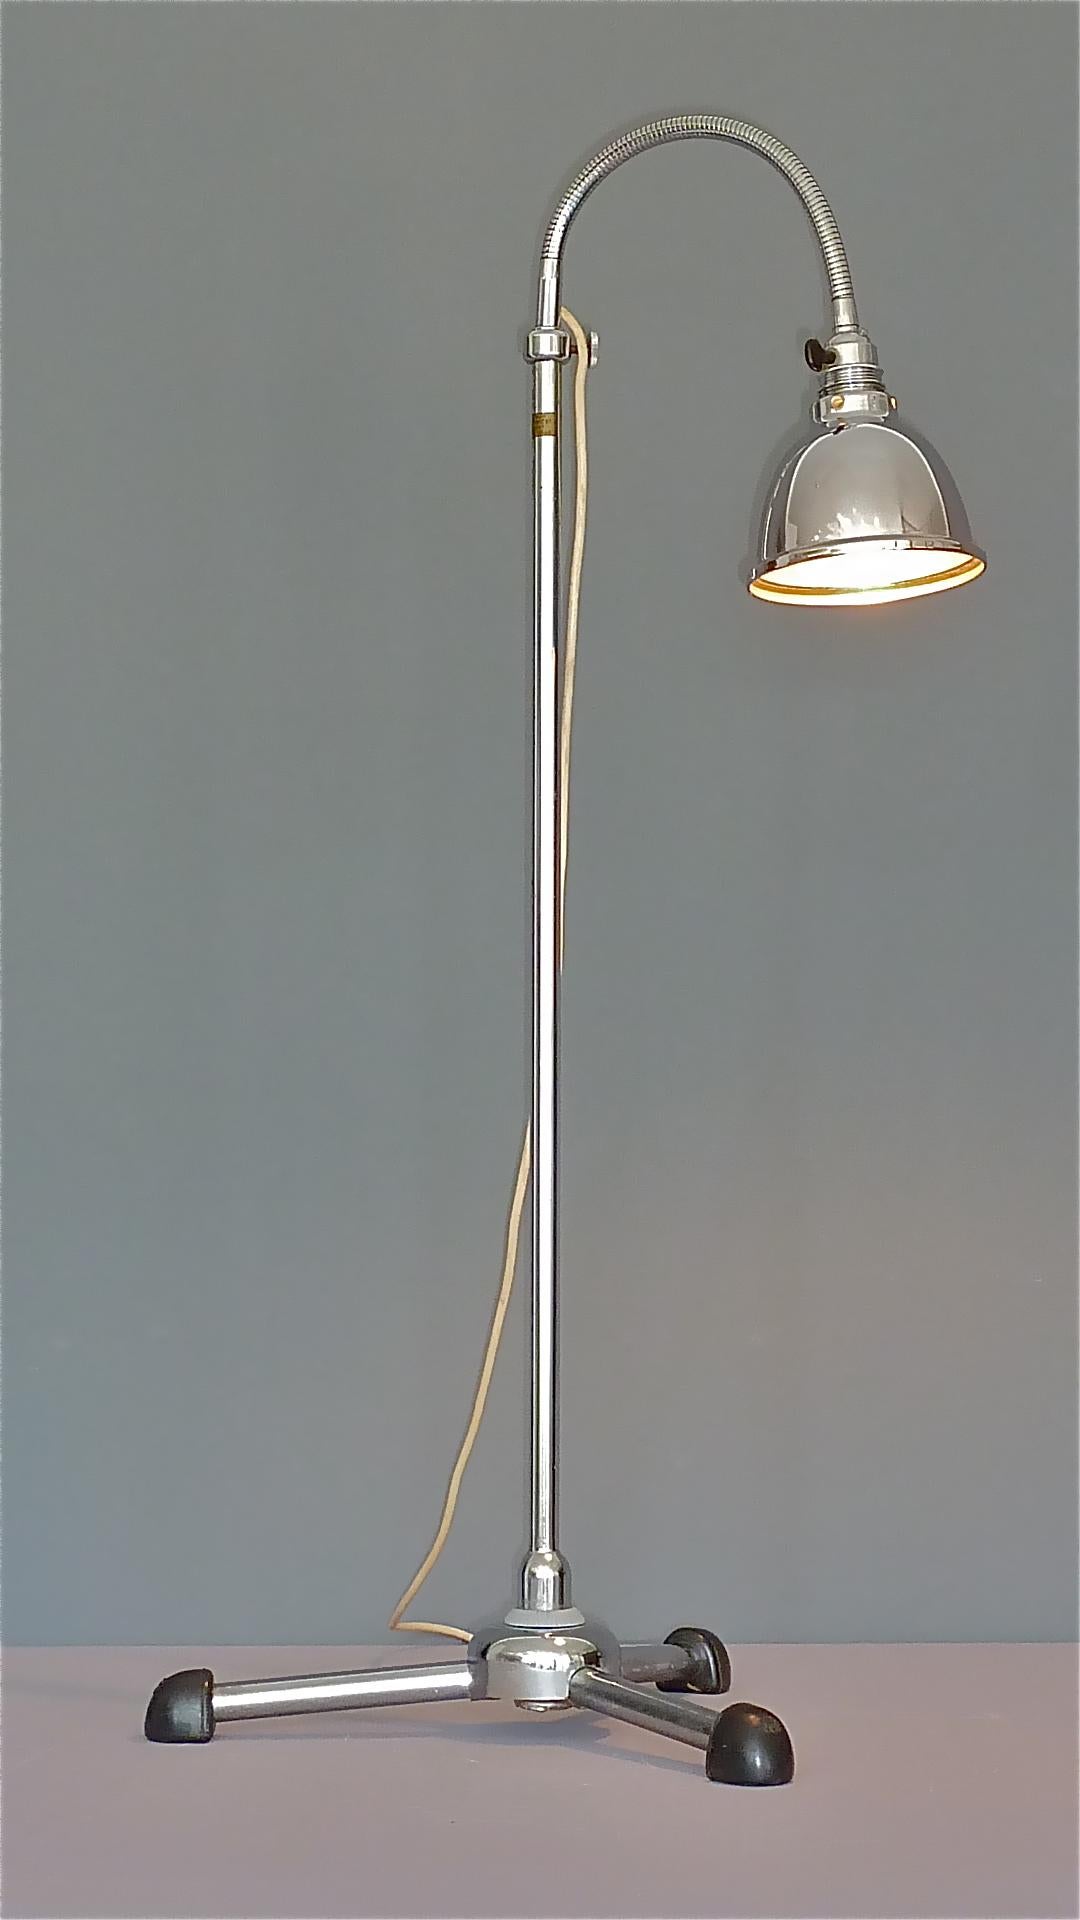 Christian Dell Bauhaus Chrome Metal Floor Standard Lamp 1930s Gooseneck Art Deco For Sale 7